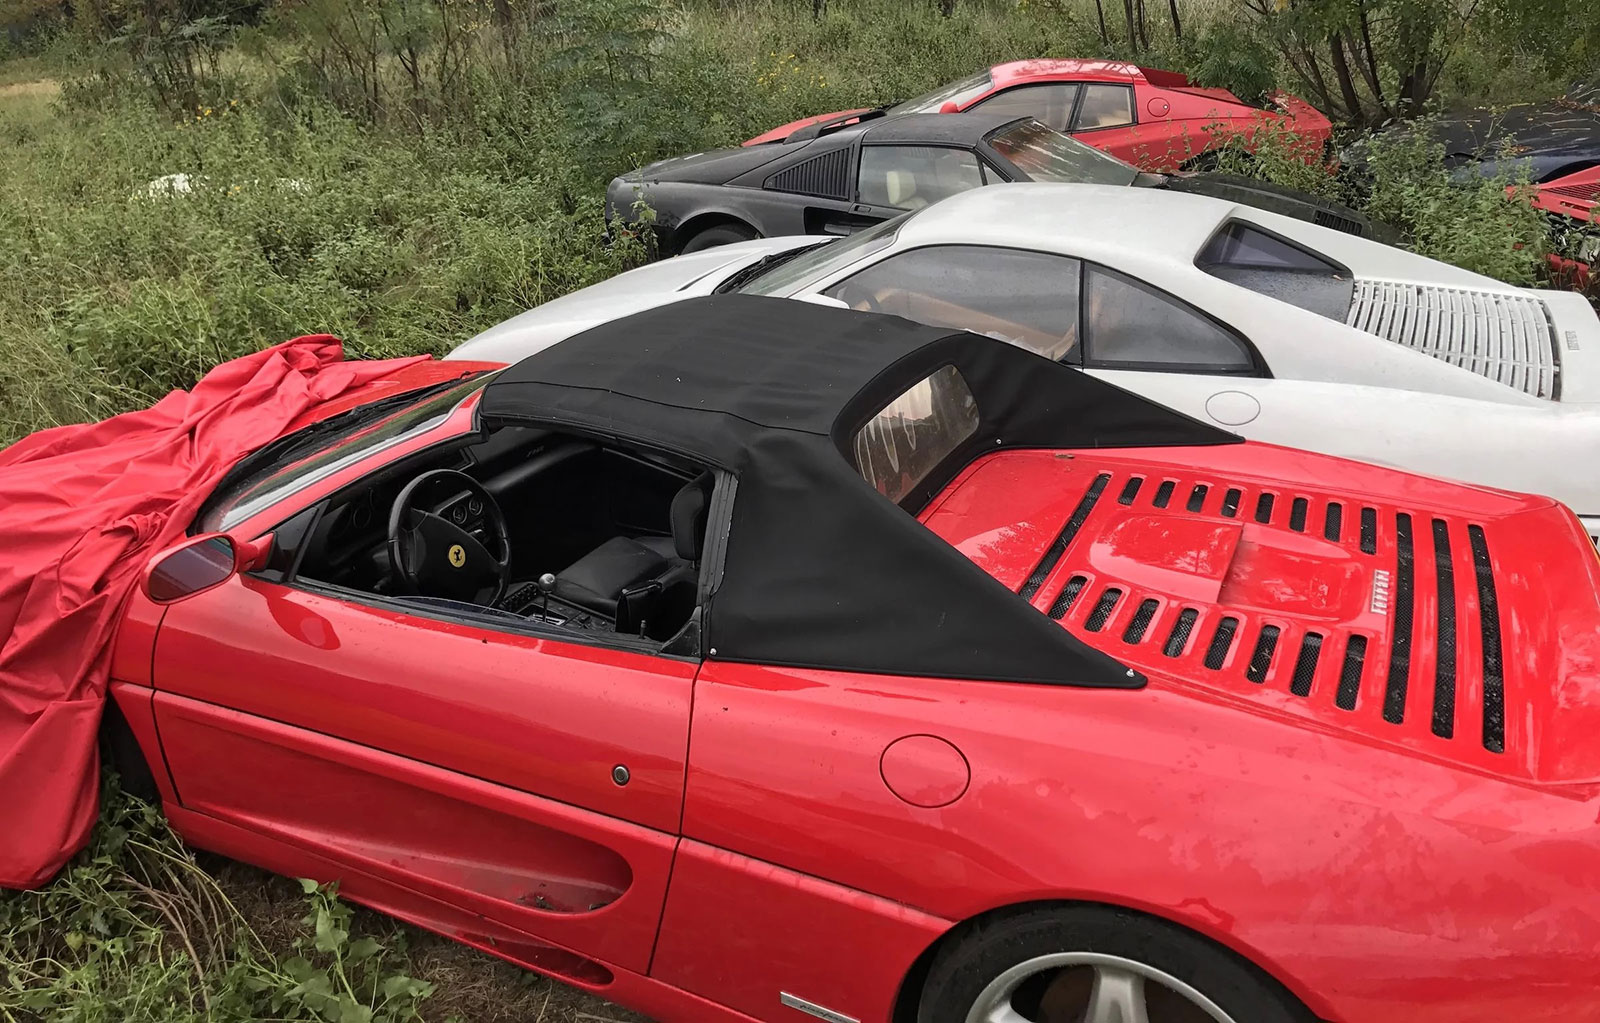 Phát hiện bộ sưu tập siêu xe Ferrari nằm phơi thân suốt 1 thập kỷ tại một bãi cỏ tại Mỹ a8